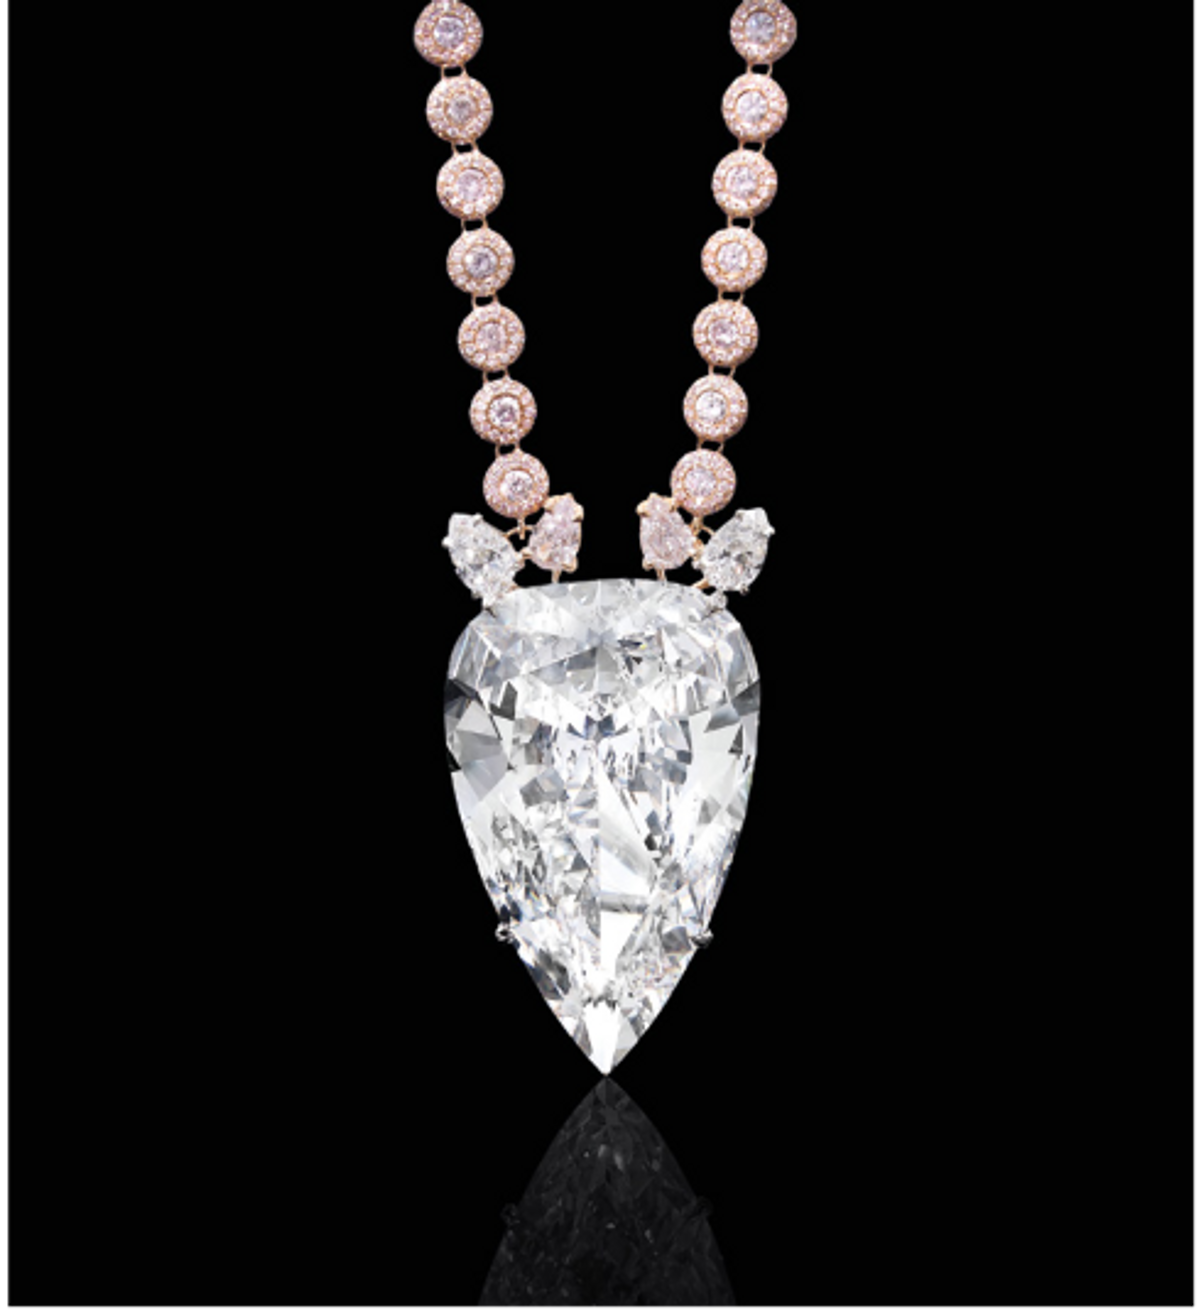 Collier de diamant « Eternity Drop », or rose et diamant Golconde, 76,52 carats, est. 5-7 millions d’euros. © Hôtel des ventes de Monte-Carlo